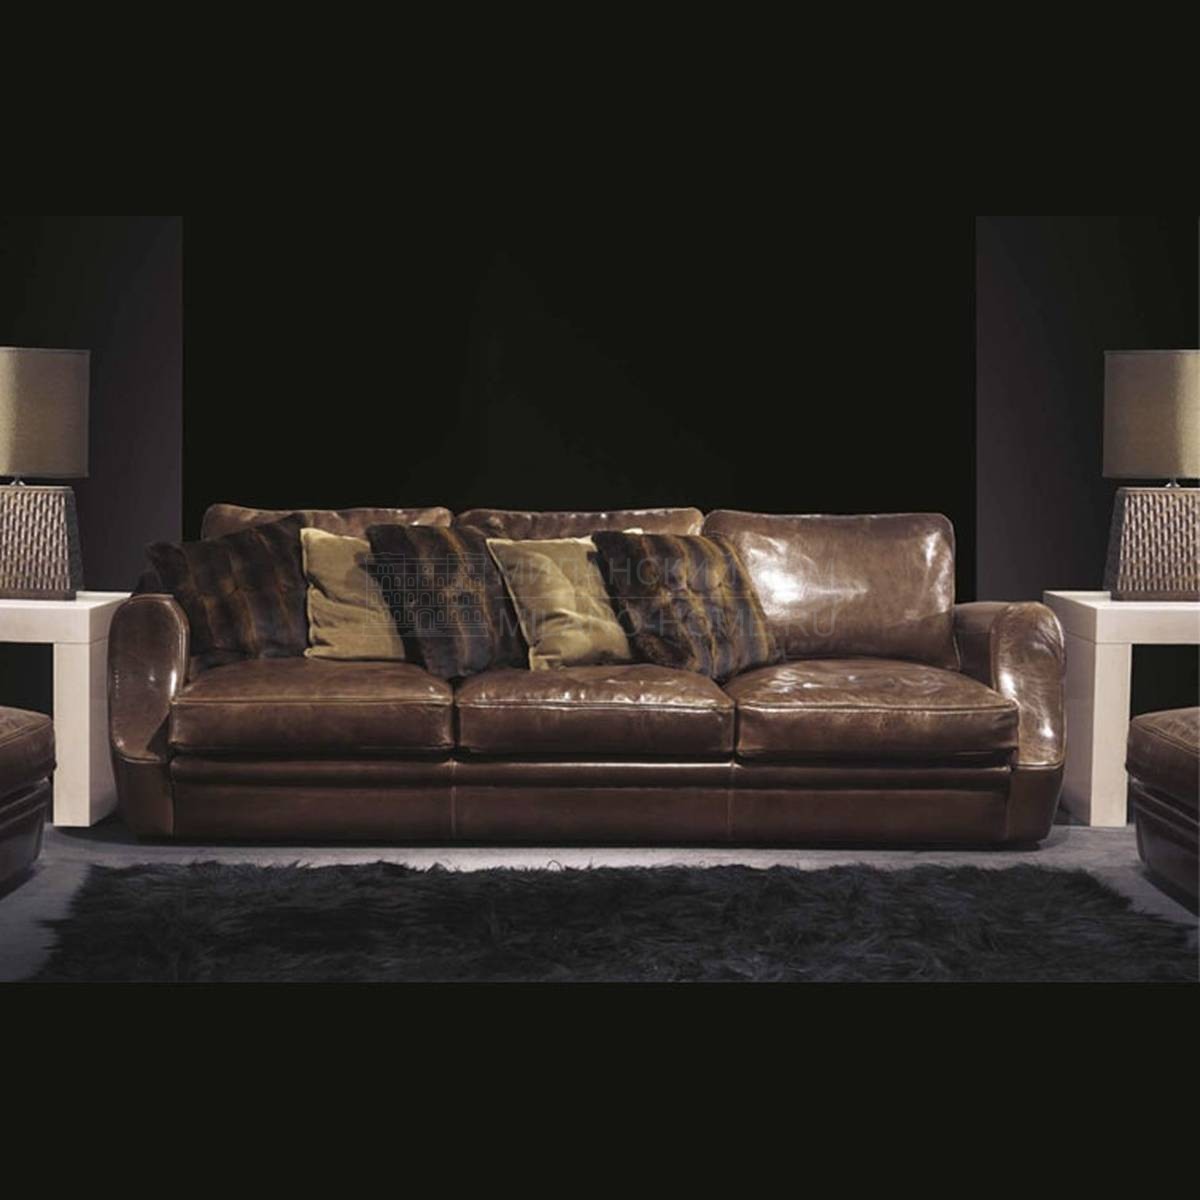 Прямой диван Adlon Sofa из Италии фабрики ULIVI